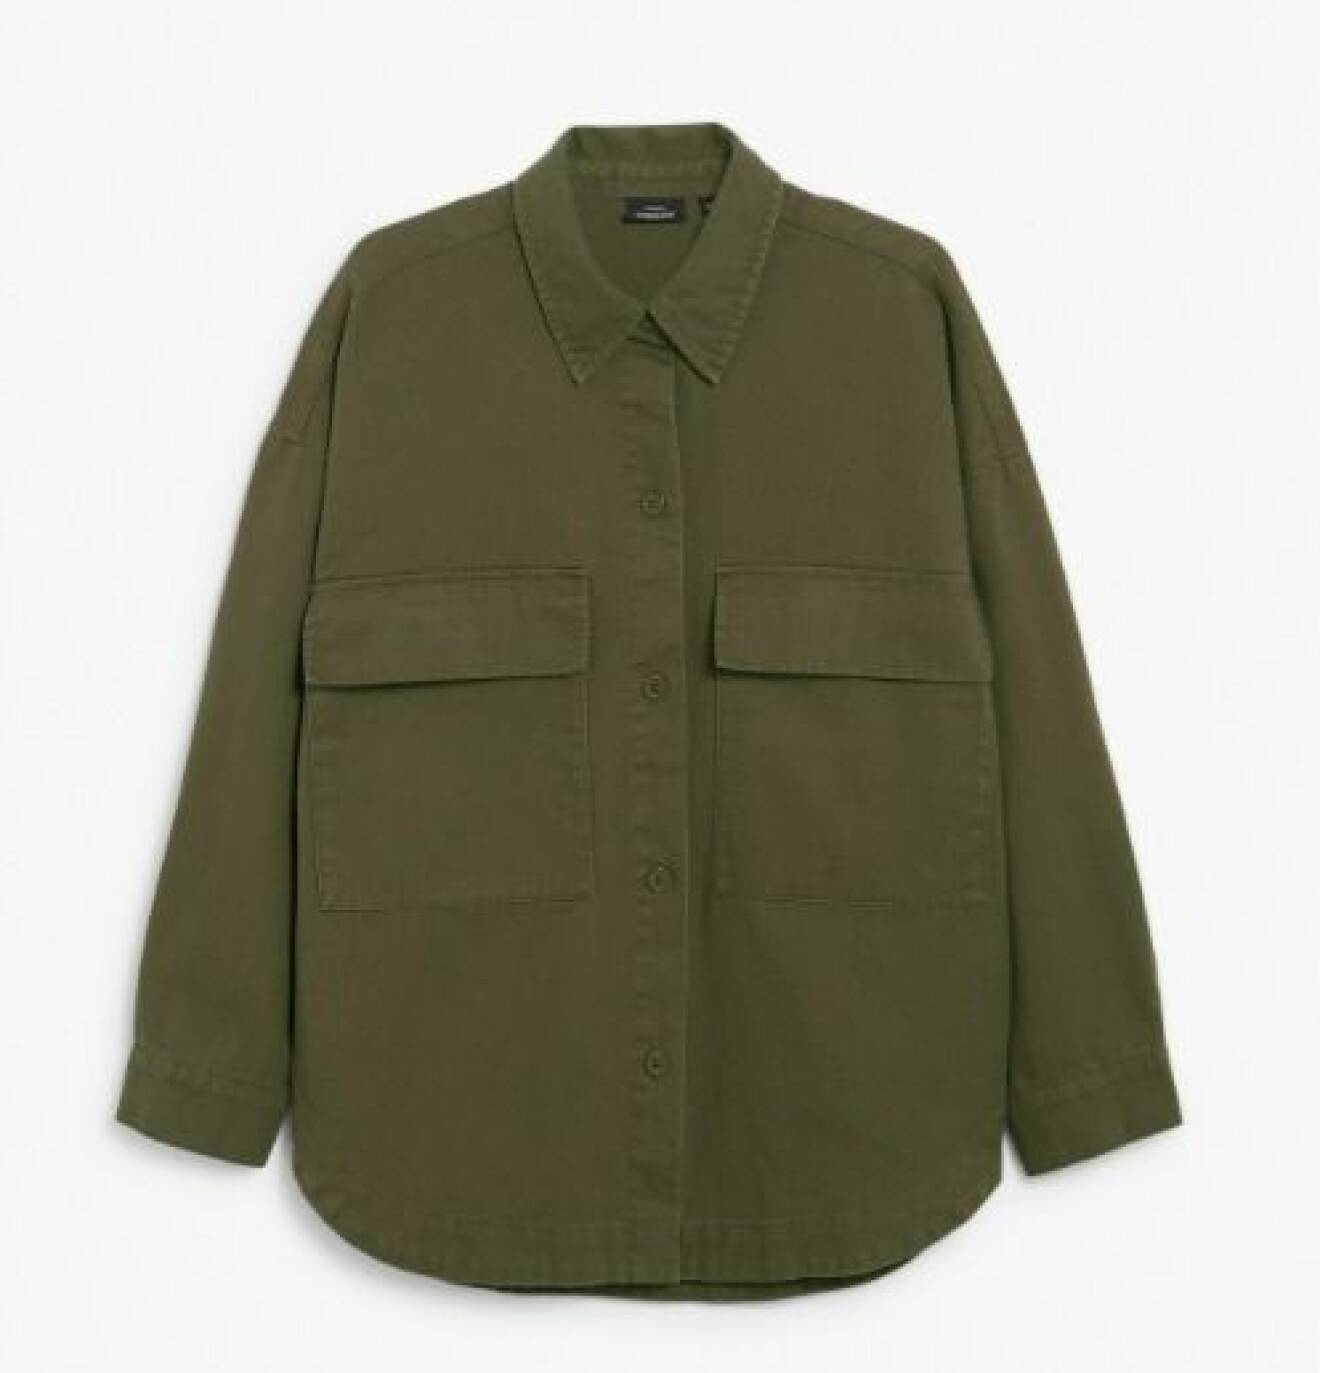 Militärgrön overshirt med fick på brösten. Overshirt från Kappahl.